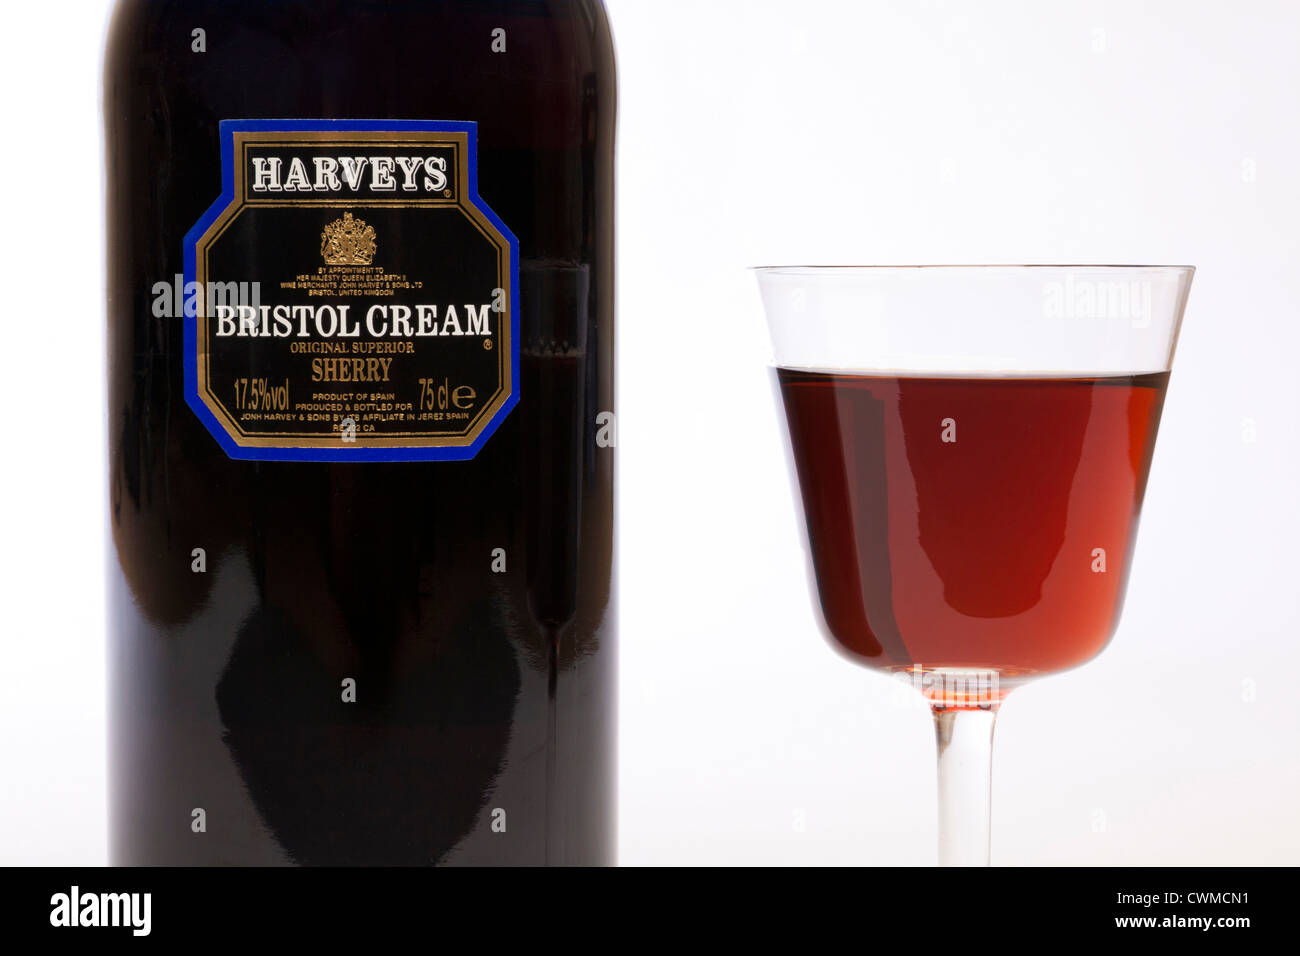 Bouteille de Harveys Bristol Cream sherry et verre Banque D'Images